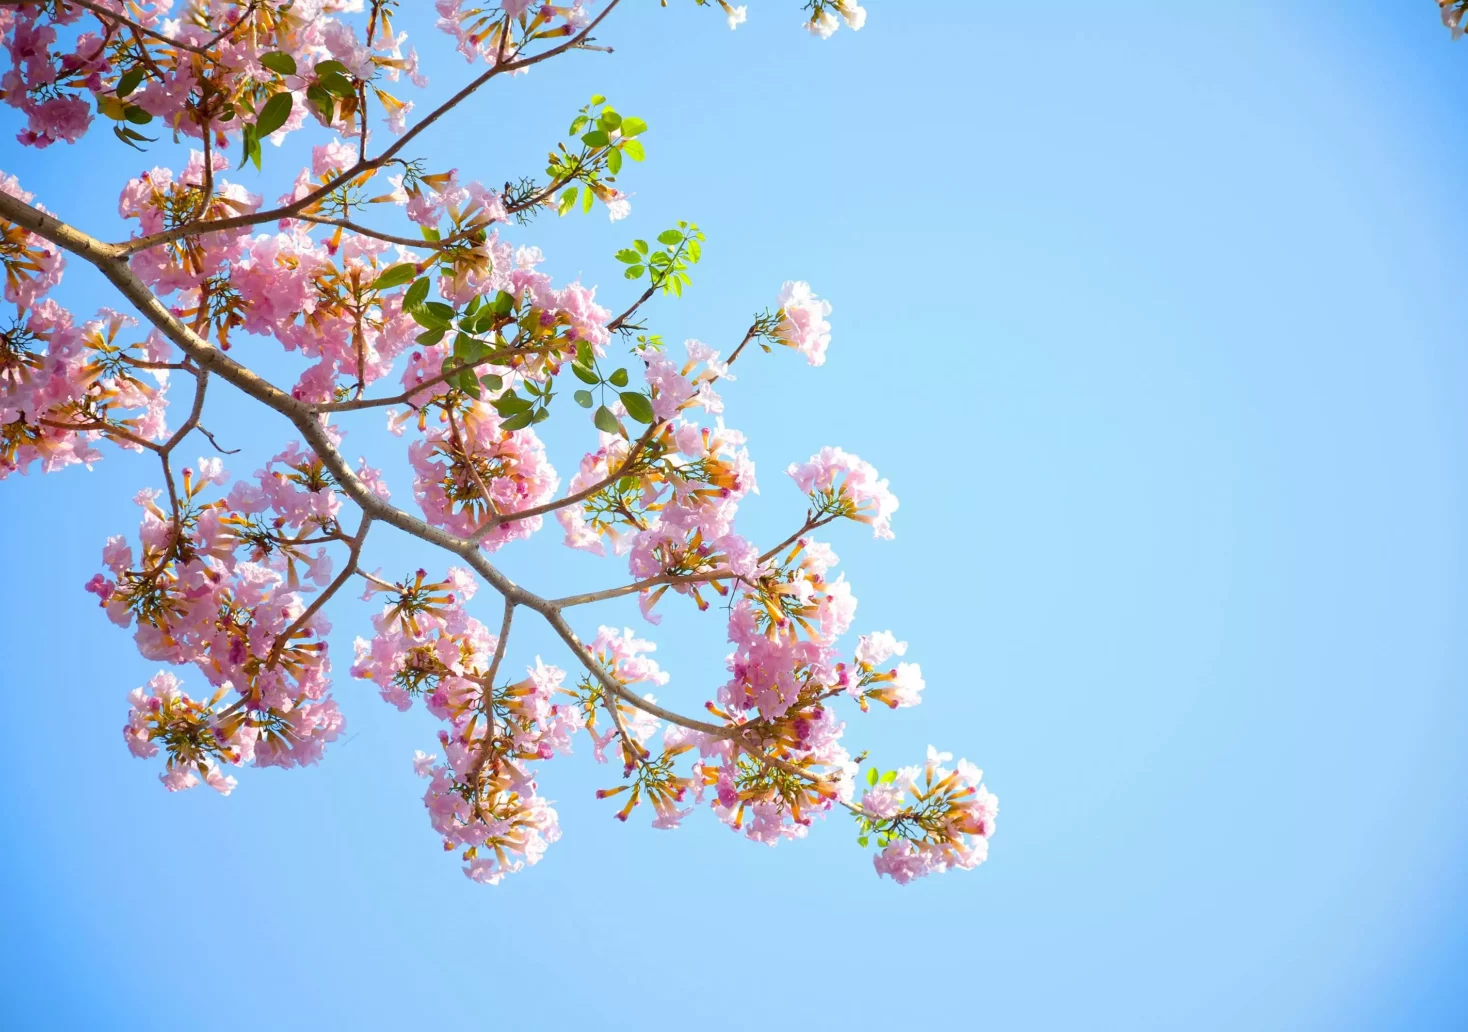 Ein Bild auf 5min.at zeigt den Zweig eines rosa blühenden Obstbaumes.